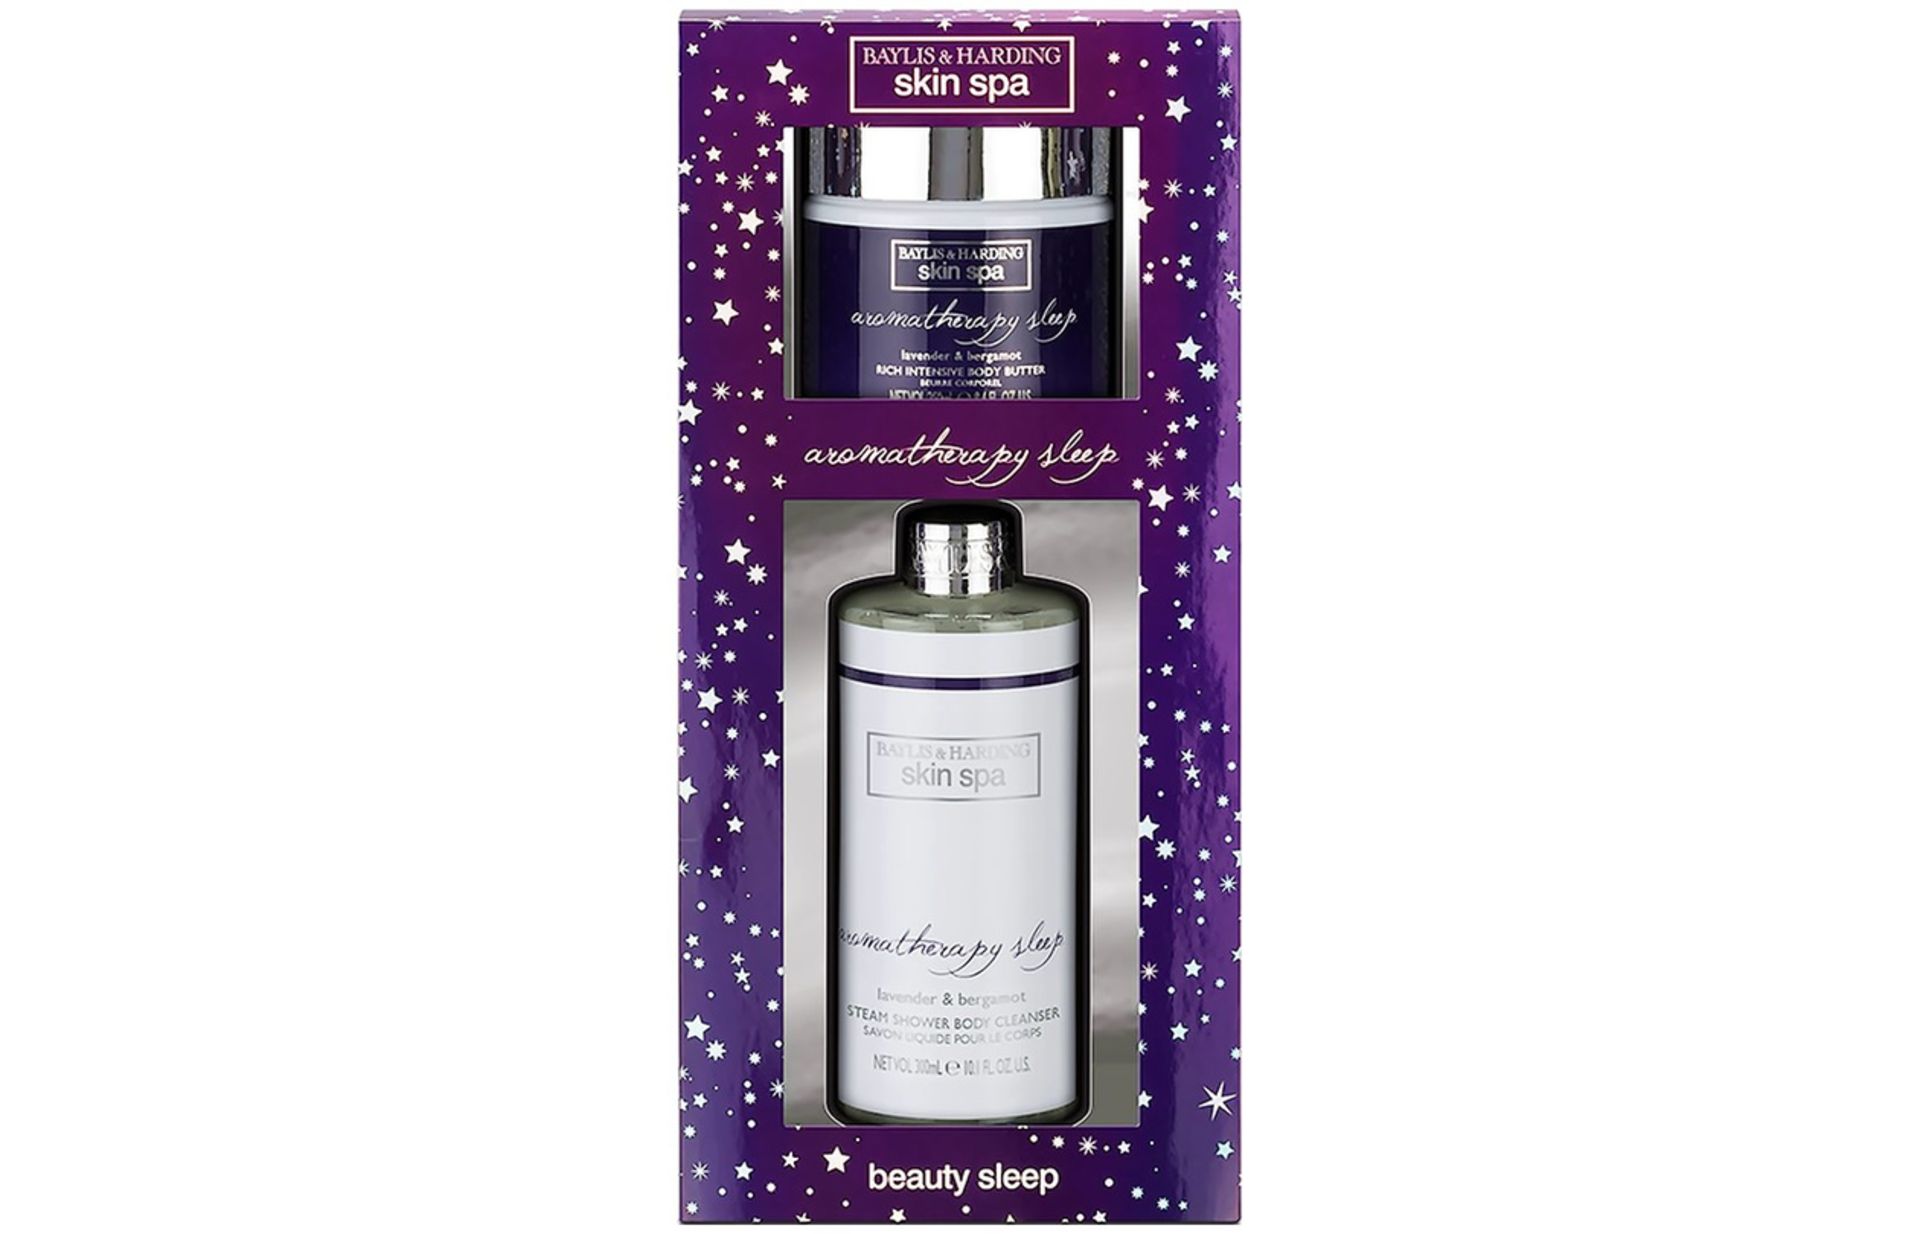 V Brand New Baylis & Harding Skin Spa Aromatherapy Sleep Gift Set ISP £10